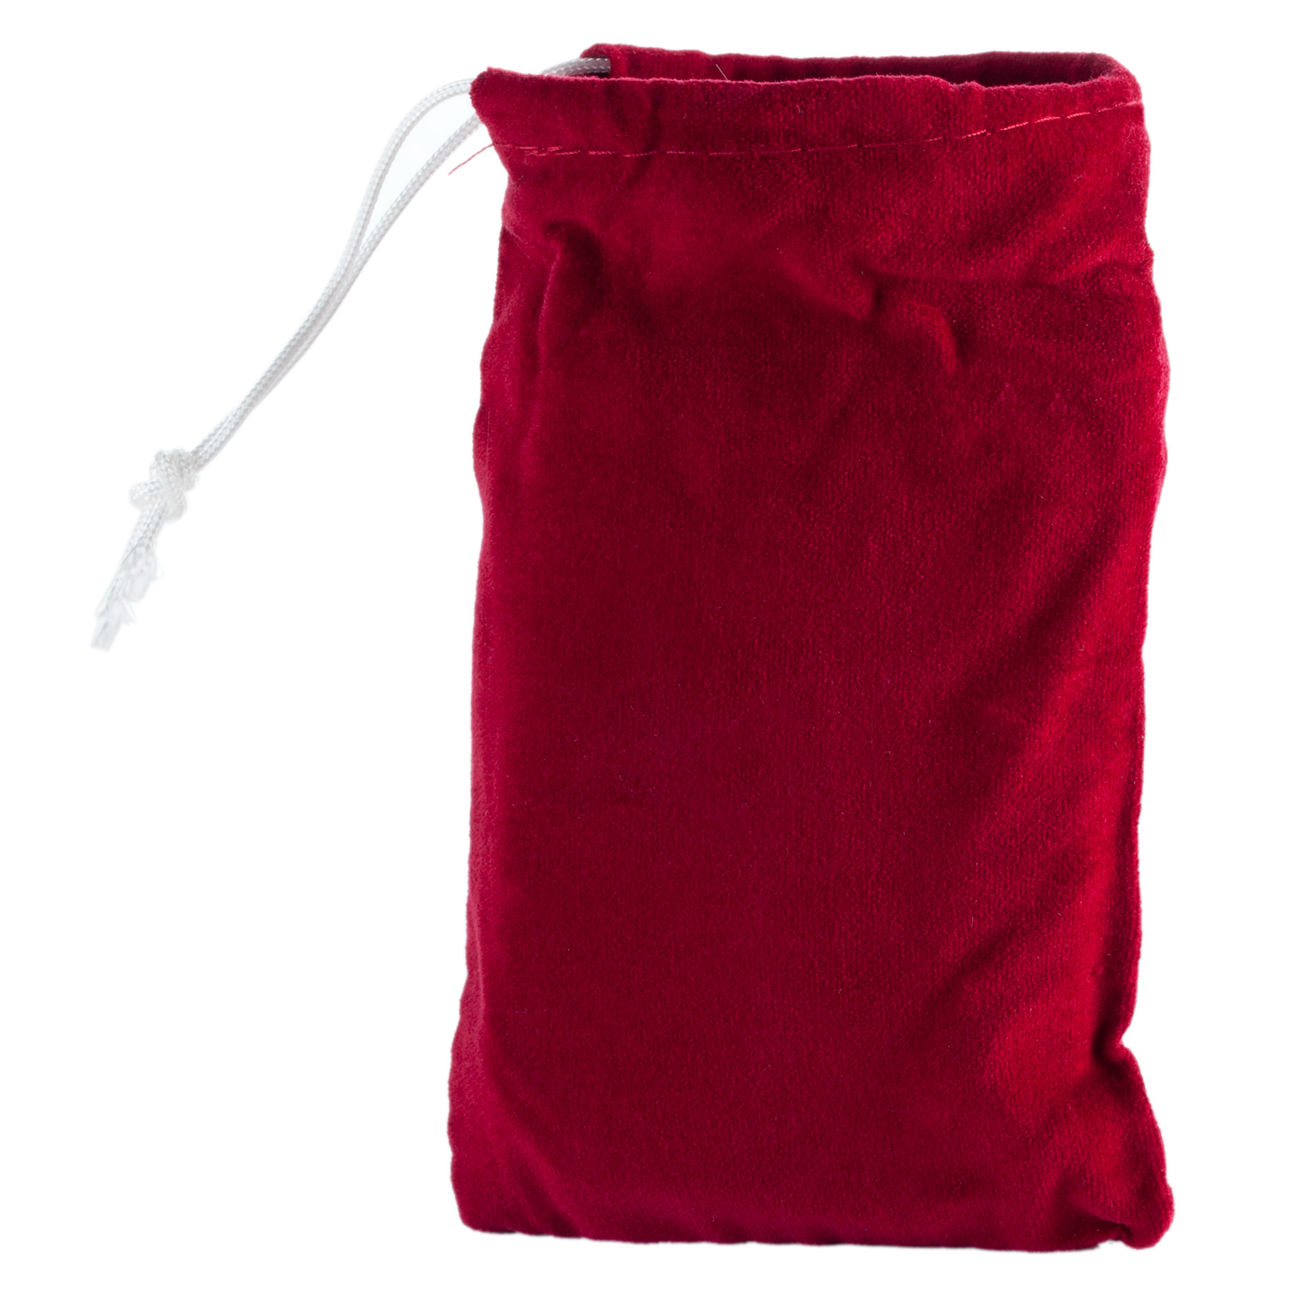 Handwärmer Taschenofen für Brennstäbe, wiederverwendbar, Bild 1